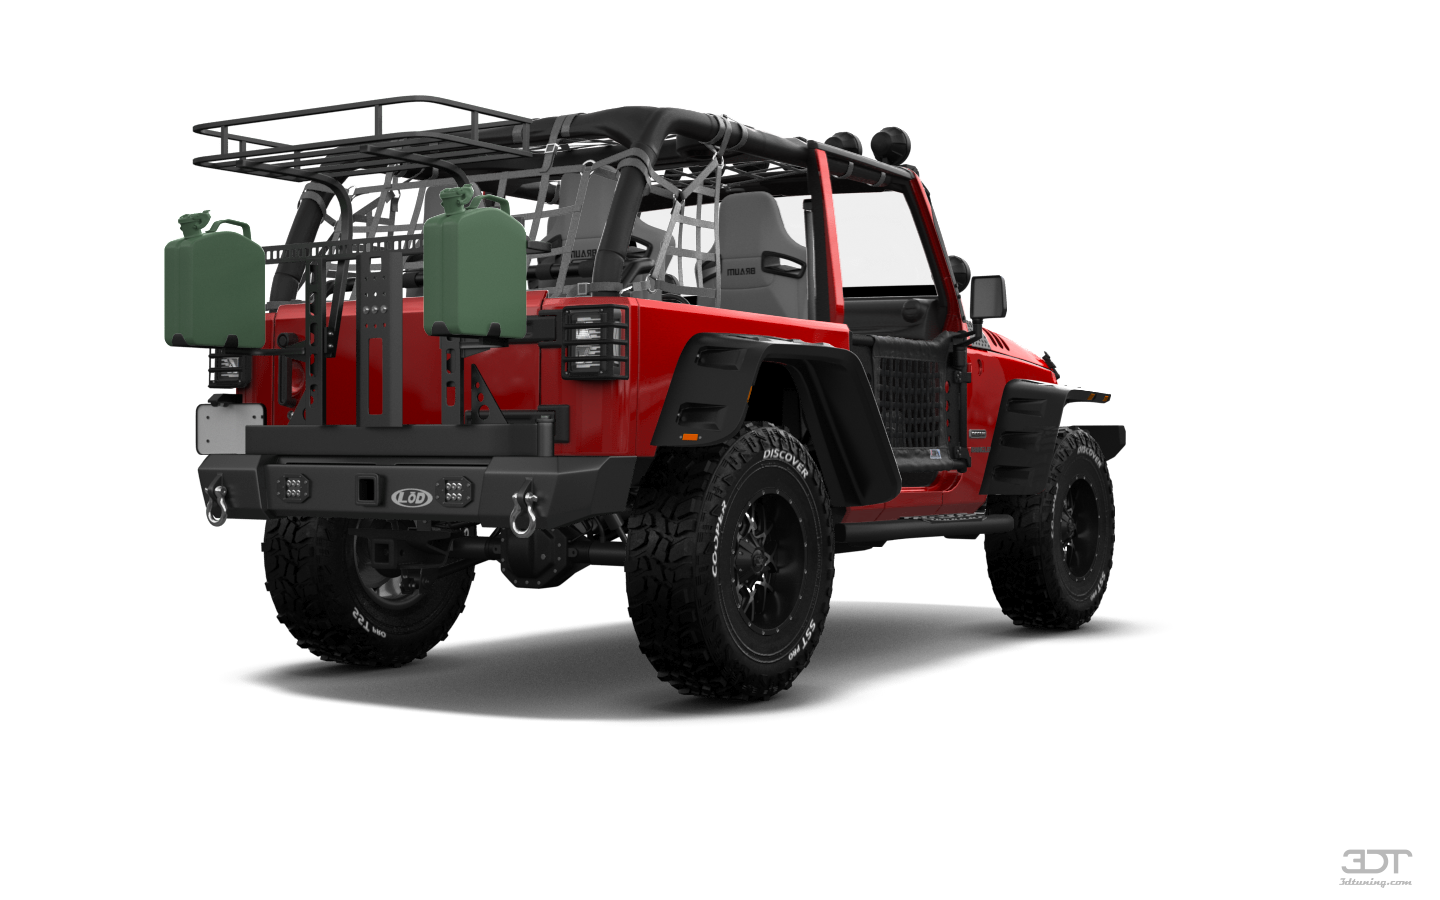 Jeep Wrangler JK 2 Door SUV 2015